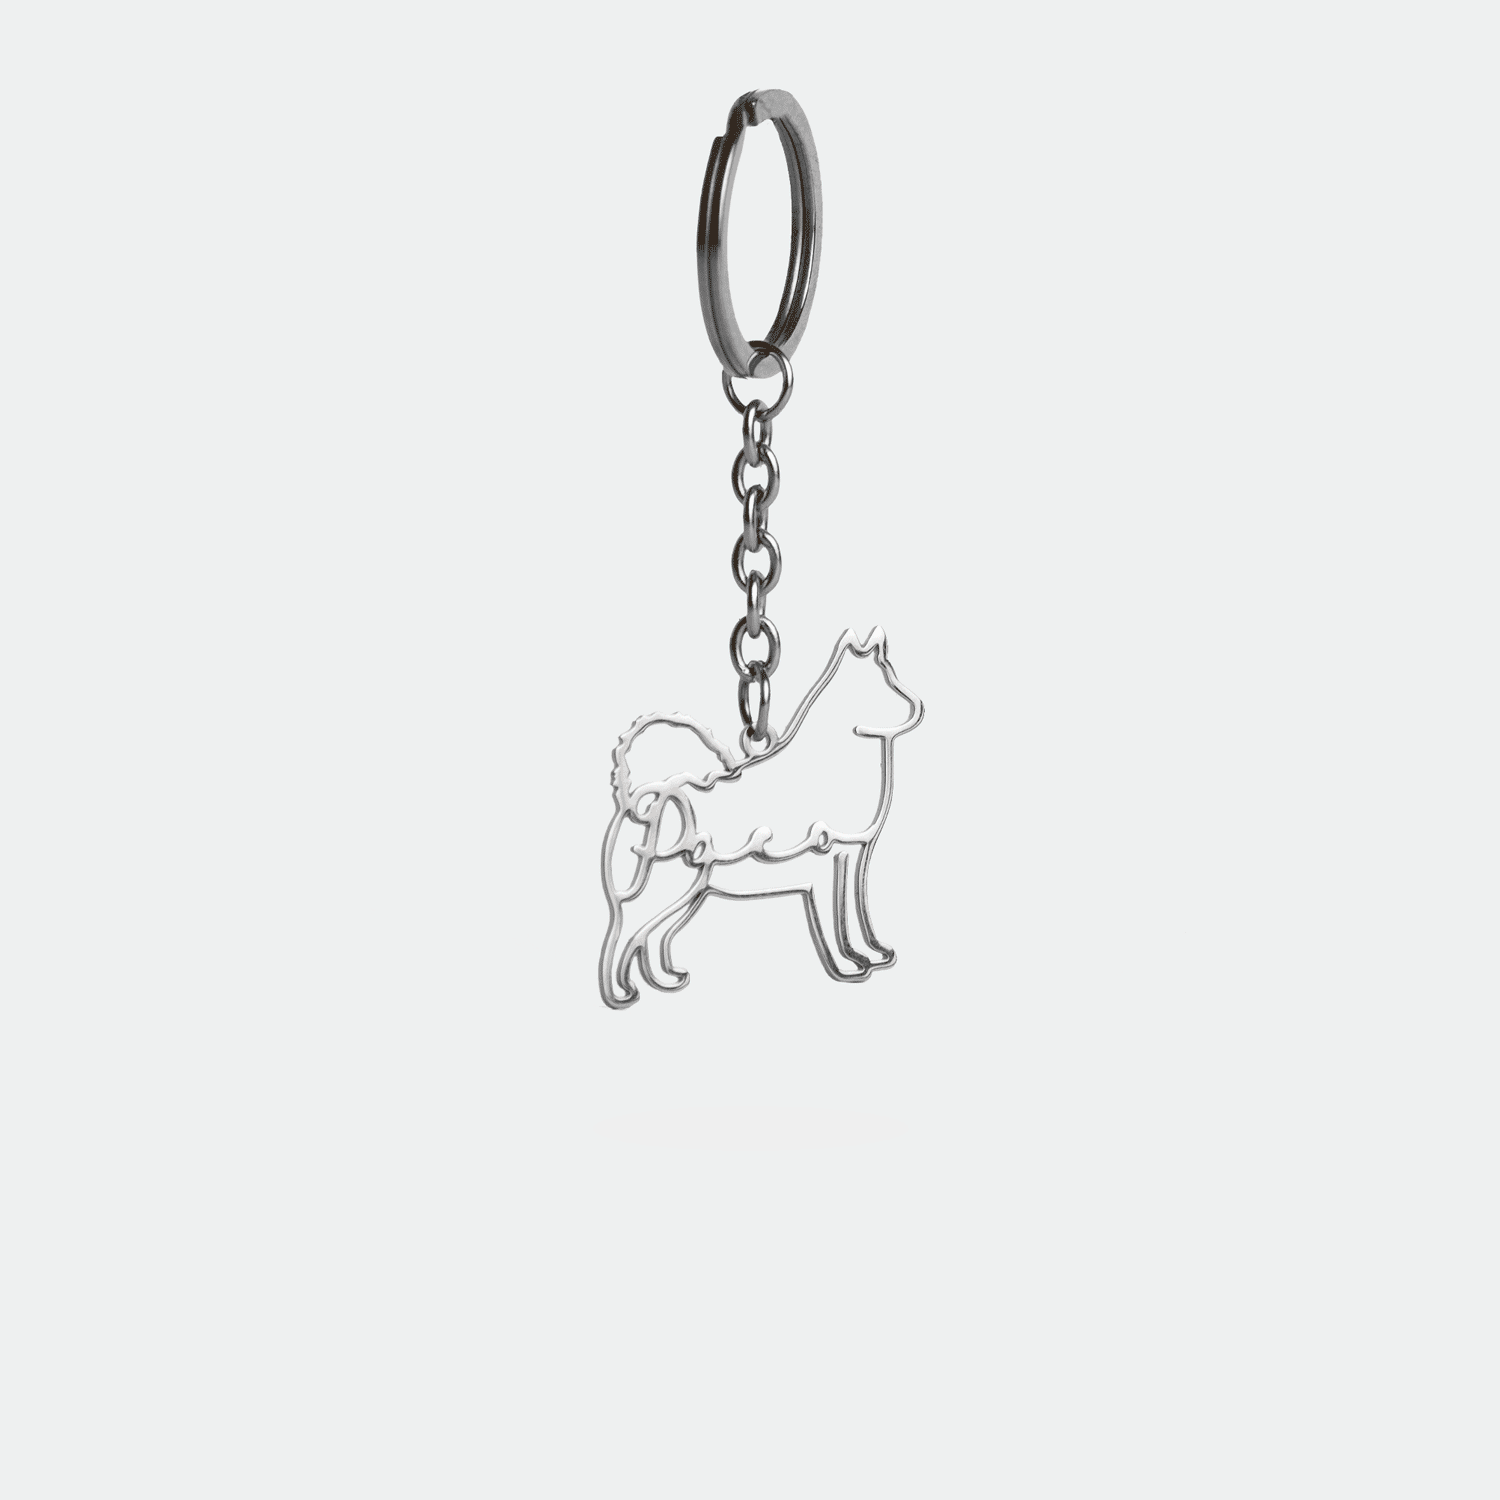 French Bulldog Breed Key Chain